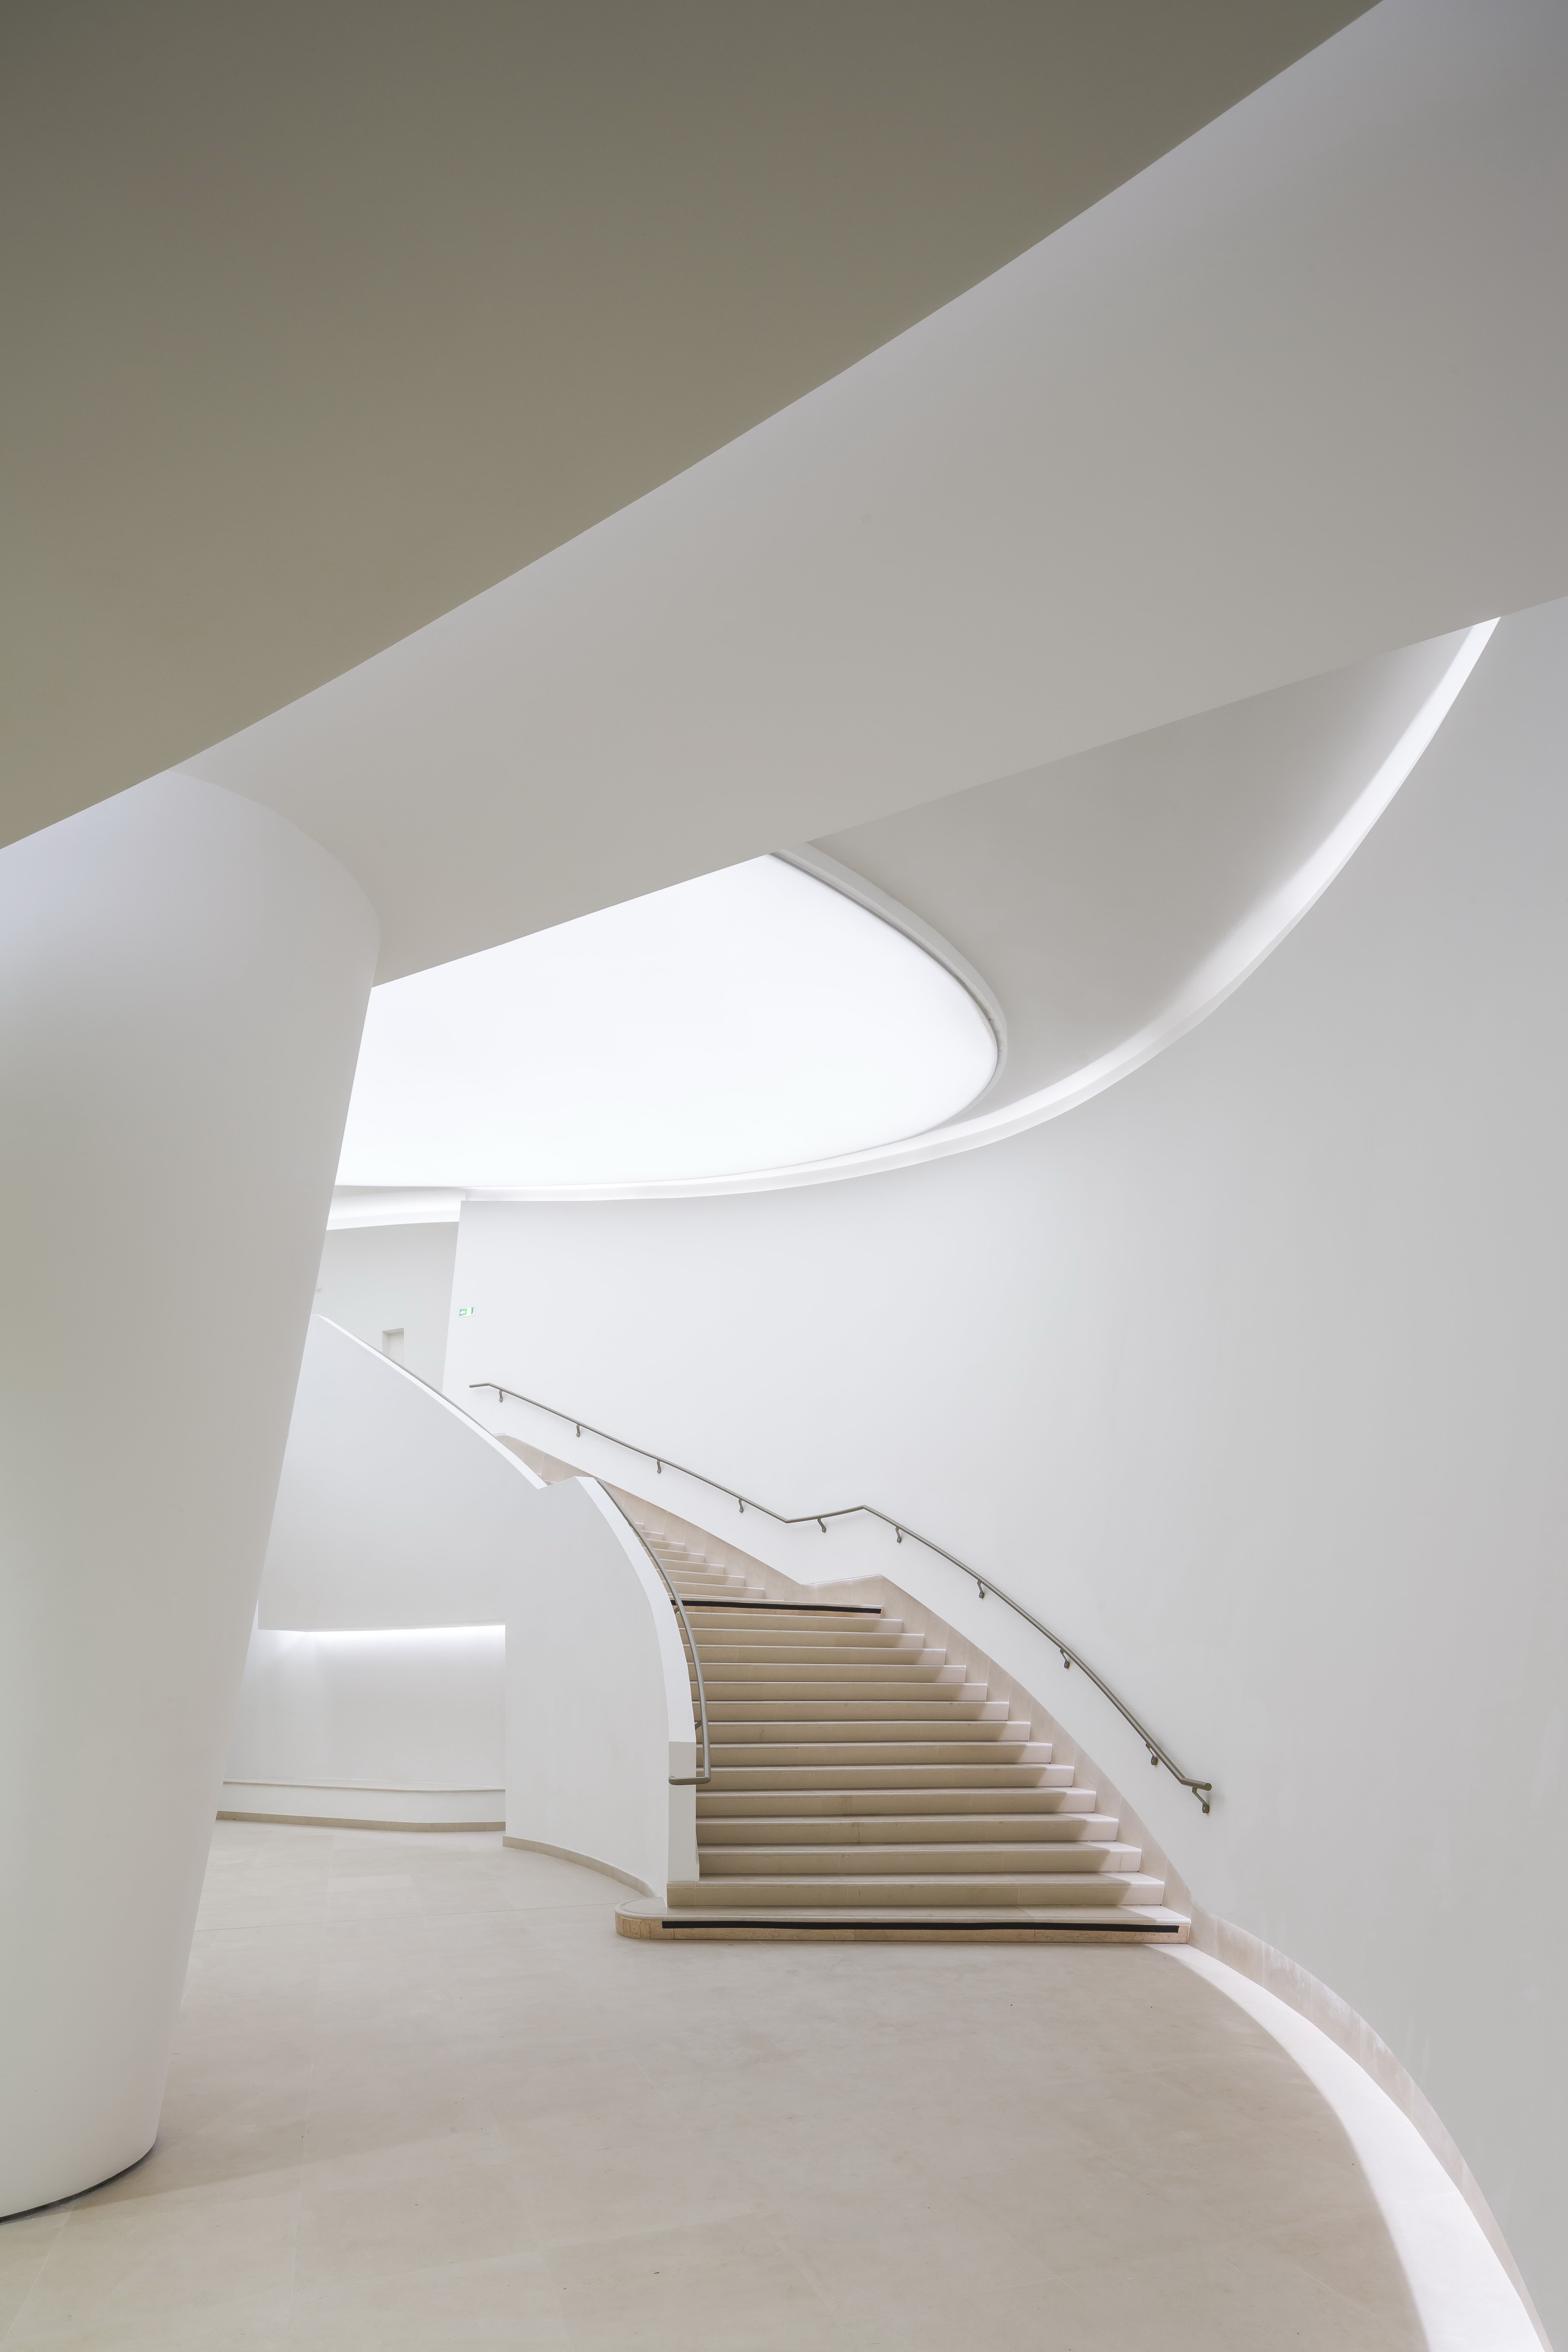 L'escalier qui relie le hall Gémier au hall Vilar © Sergio Grazia – Brossy & Associés